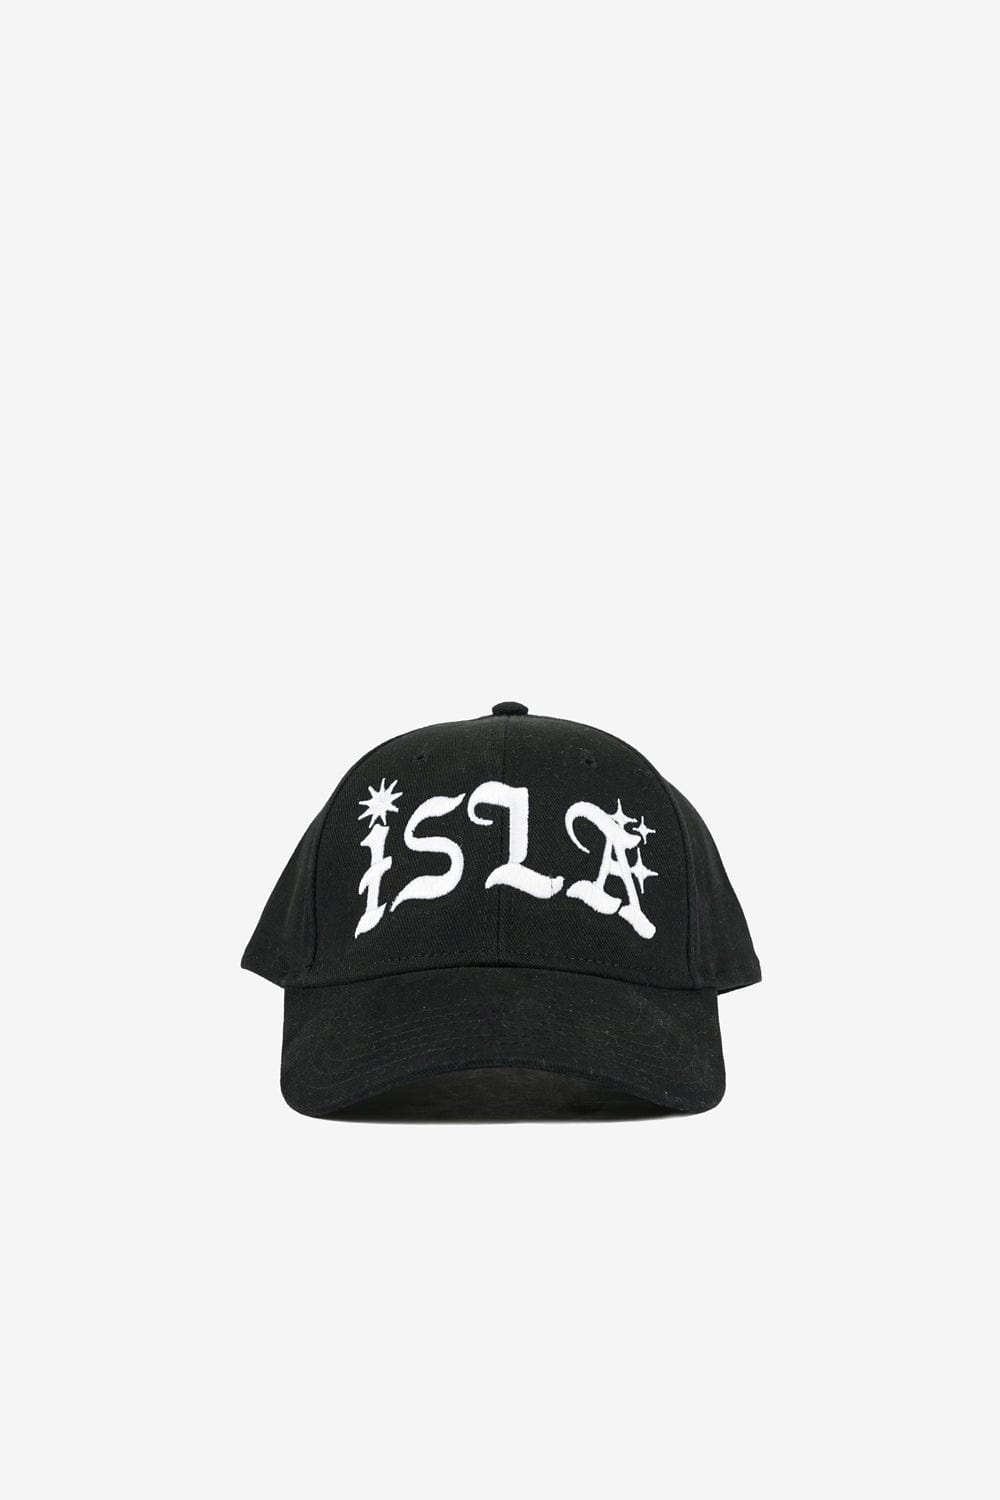 ISLA OG Logo 6-Panel Hat Embroidered (Black)